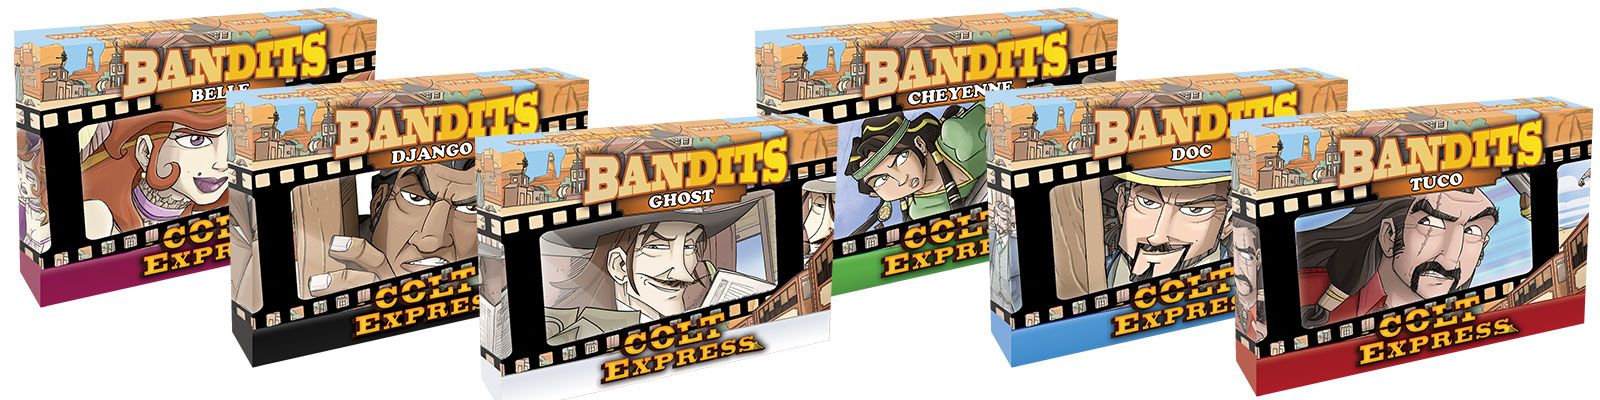 Die ersten Colt Express – Bandits sind ab nächster Woche erhältlich